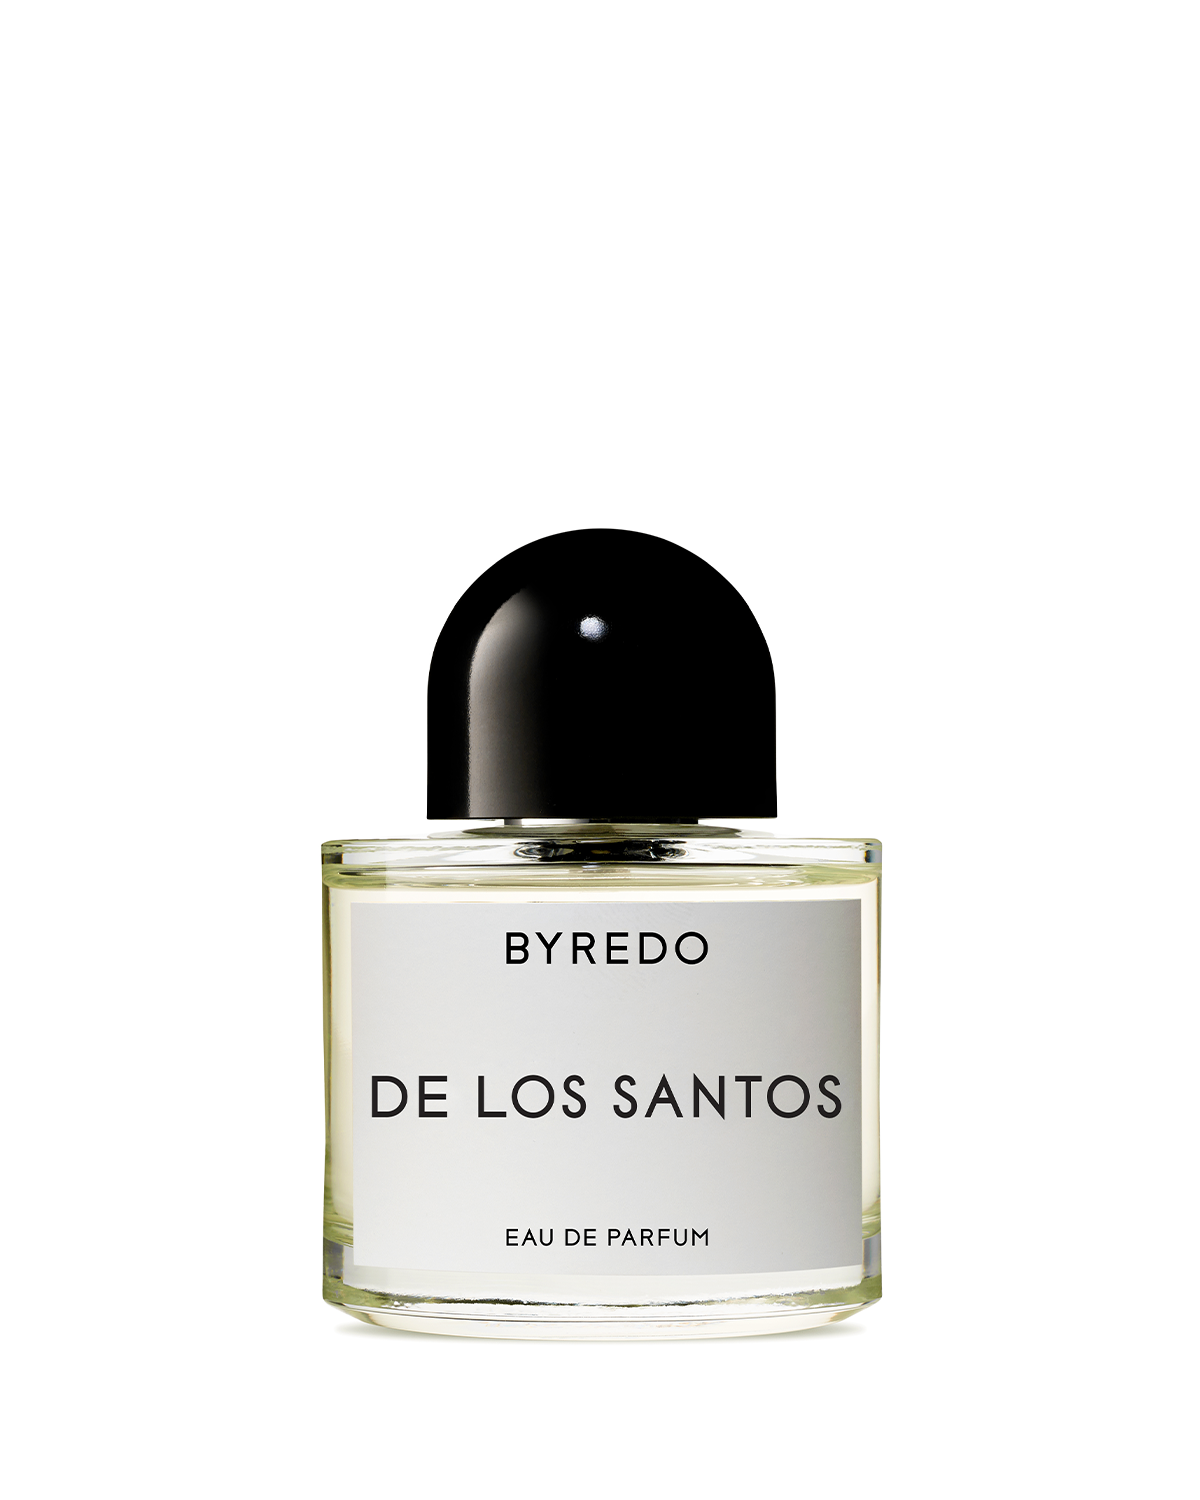 De Los Santos 50ml Eau de Parfum